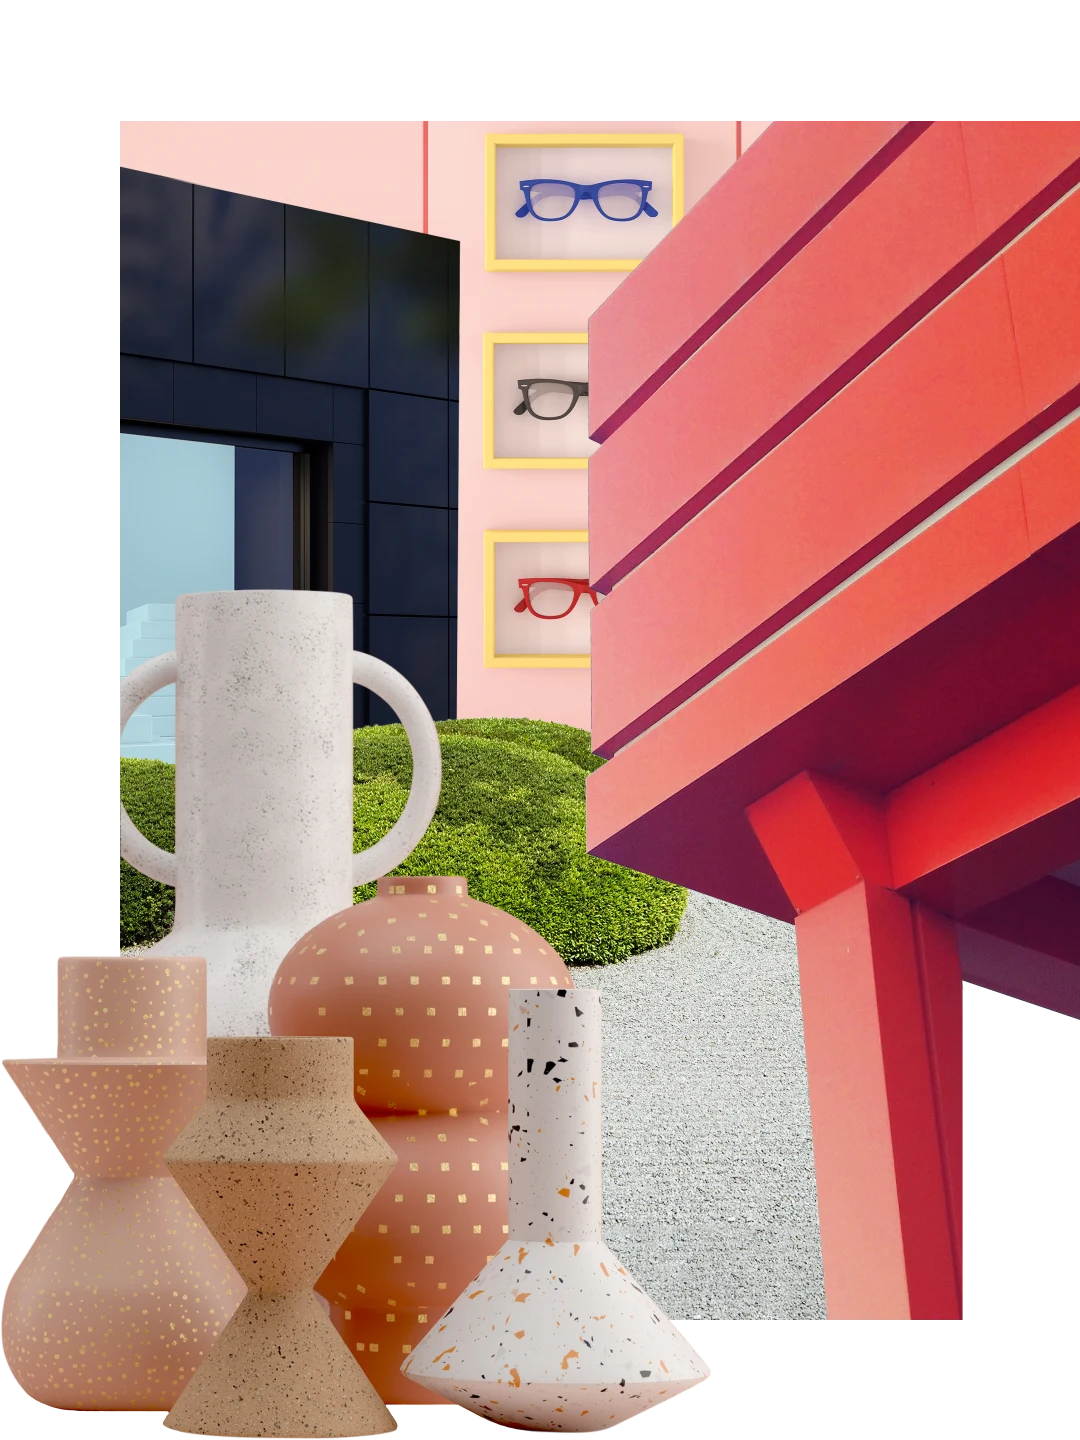 Eine Collage mit Gegenständen zum Thema Geschäft. Ein eckige schwarze Boutique hinten links. Rechts ein Balkon in strahlendem Rot. Im Hintergrund eine Wand mit Brillen in gelben Bilderrahmen. Links runde und eckige Vasen mit runden grünen Büschen dahinter.
